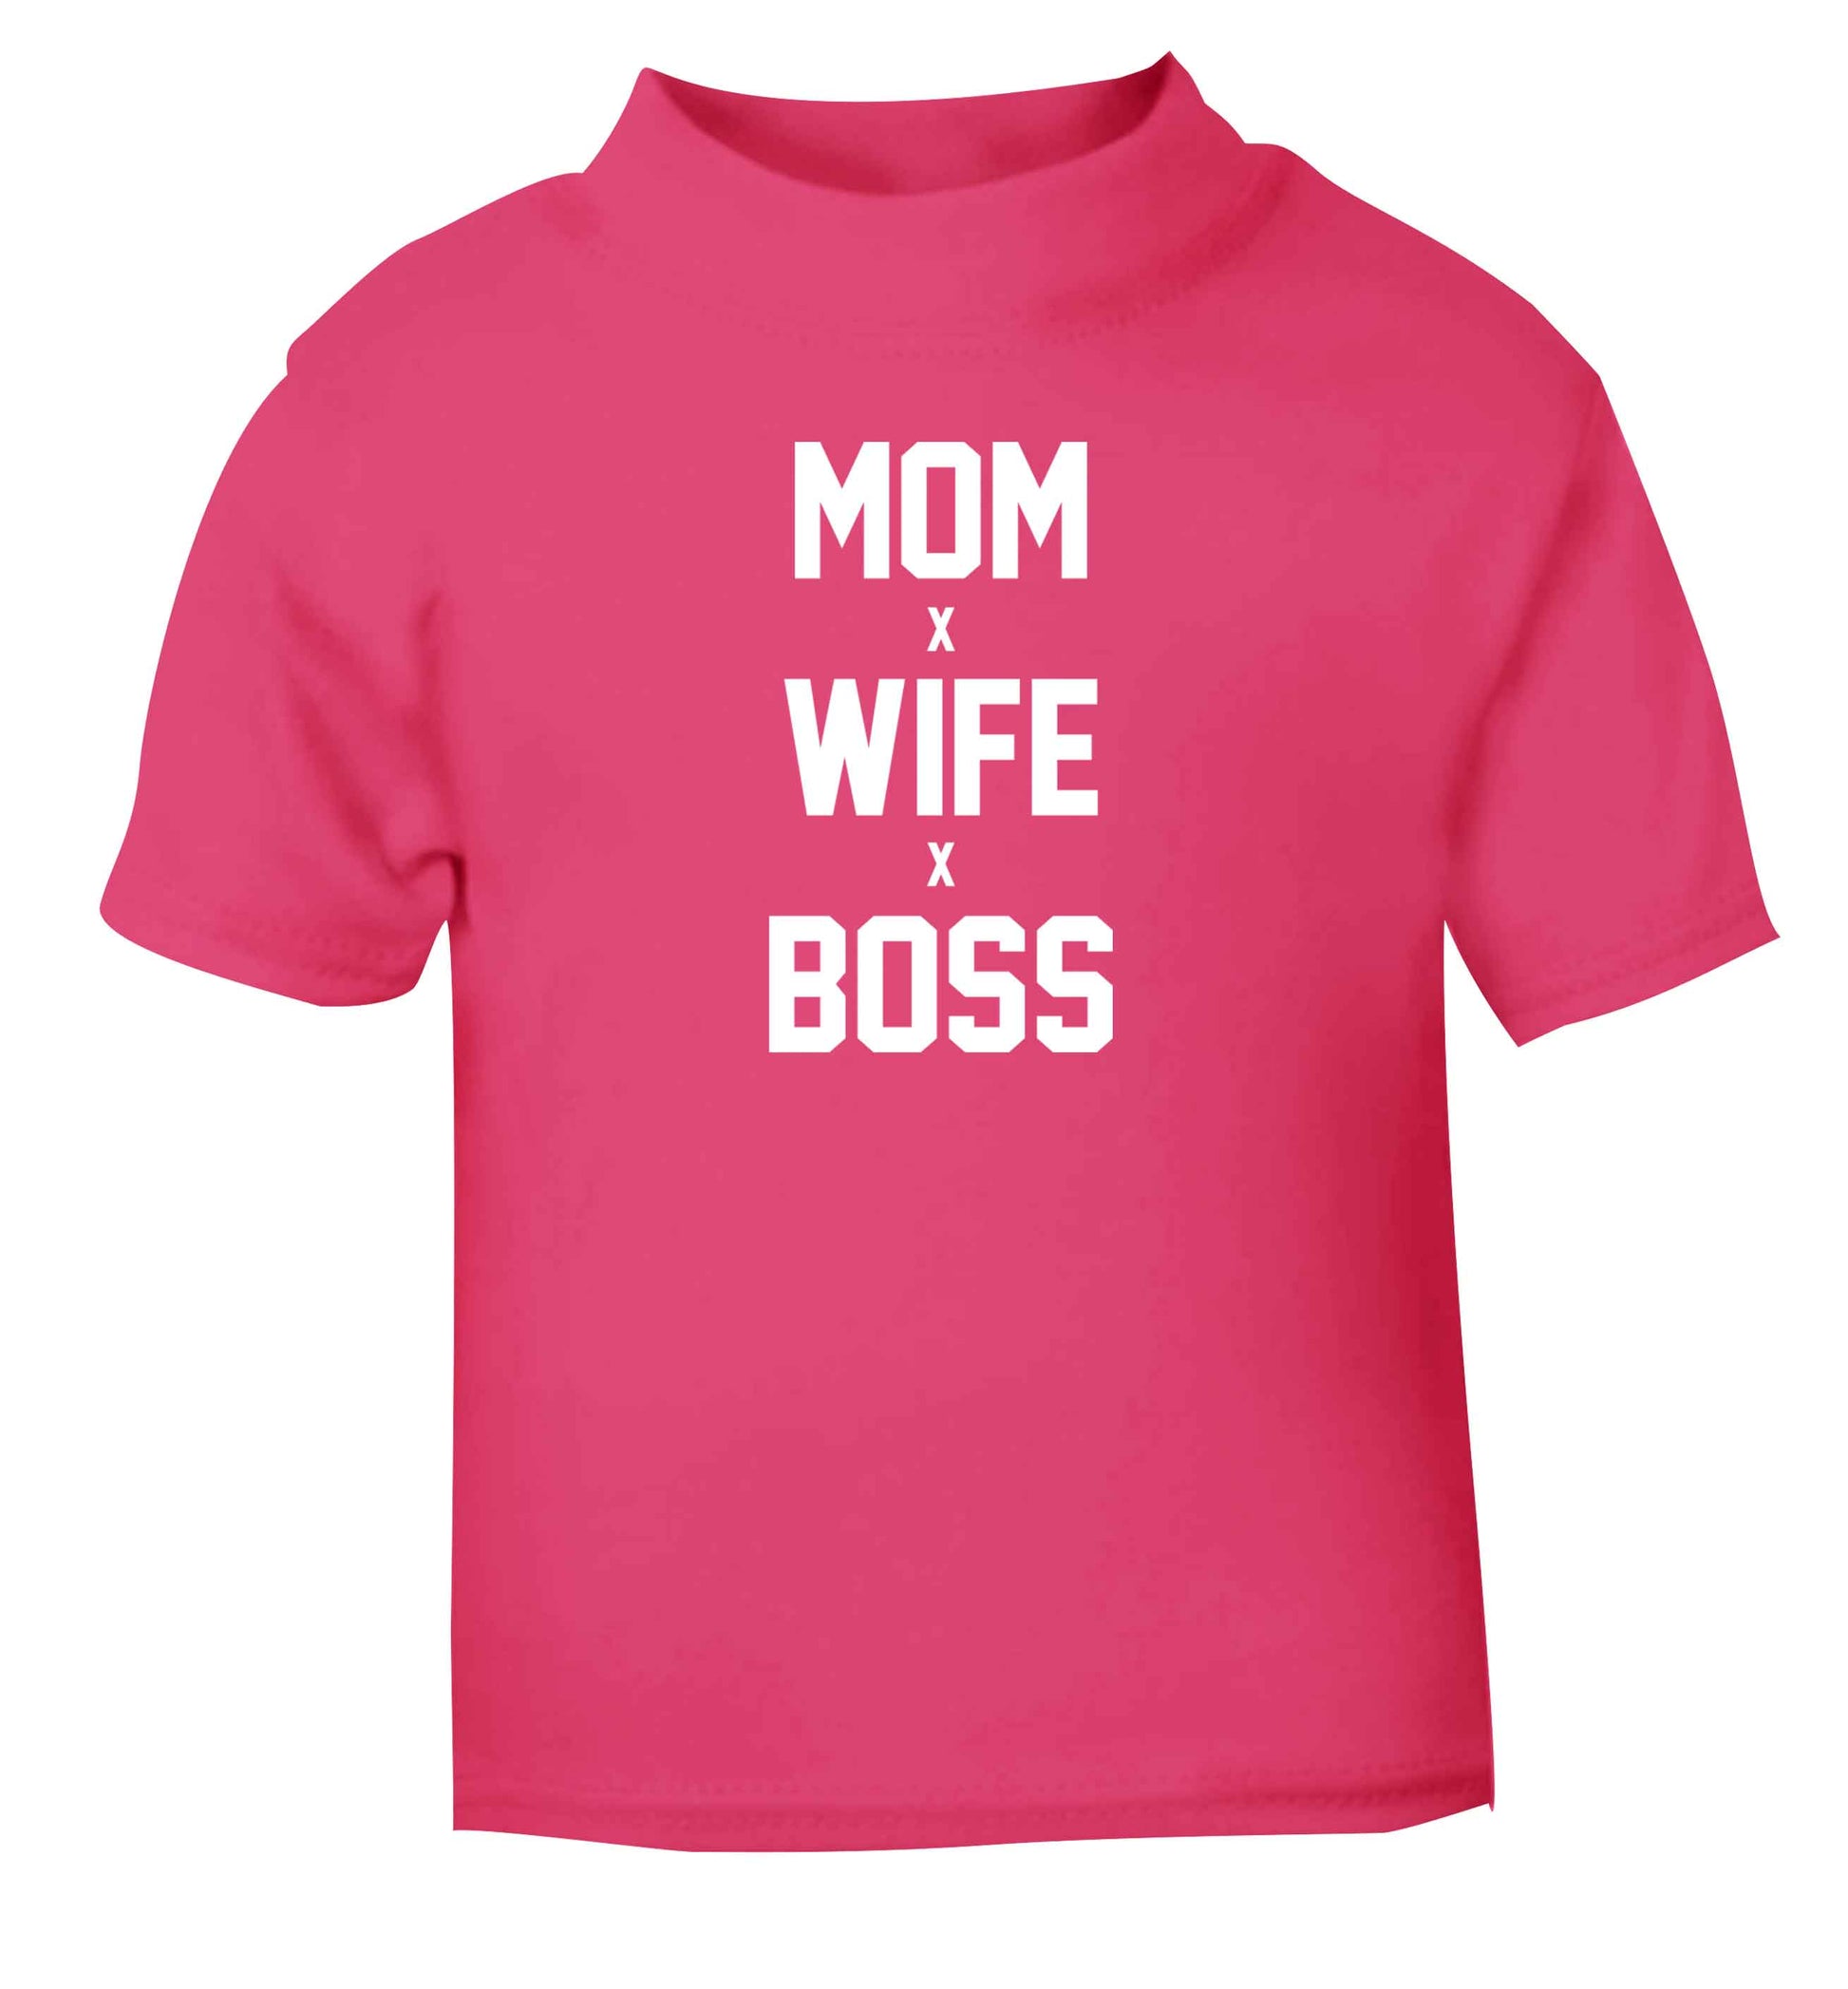 Mum wife boss pink baby toddler Tshirt 2 Years